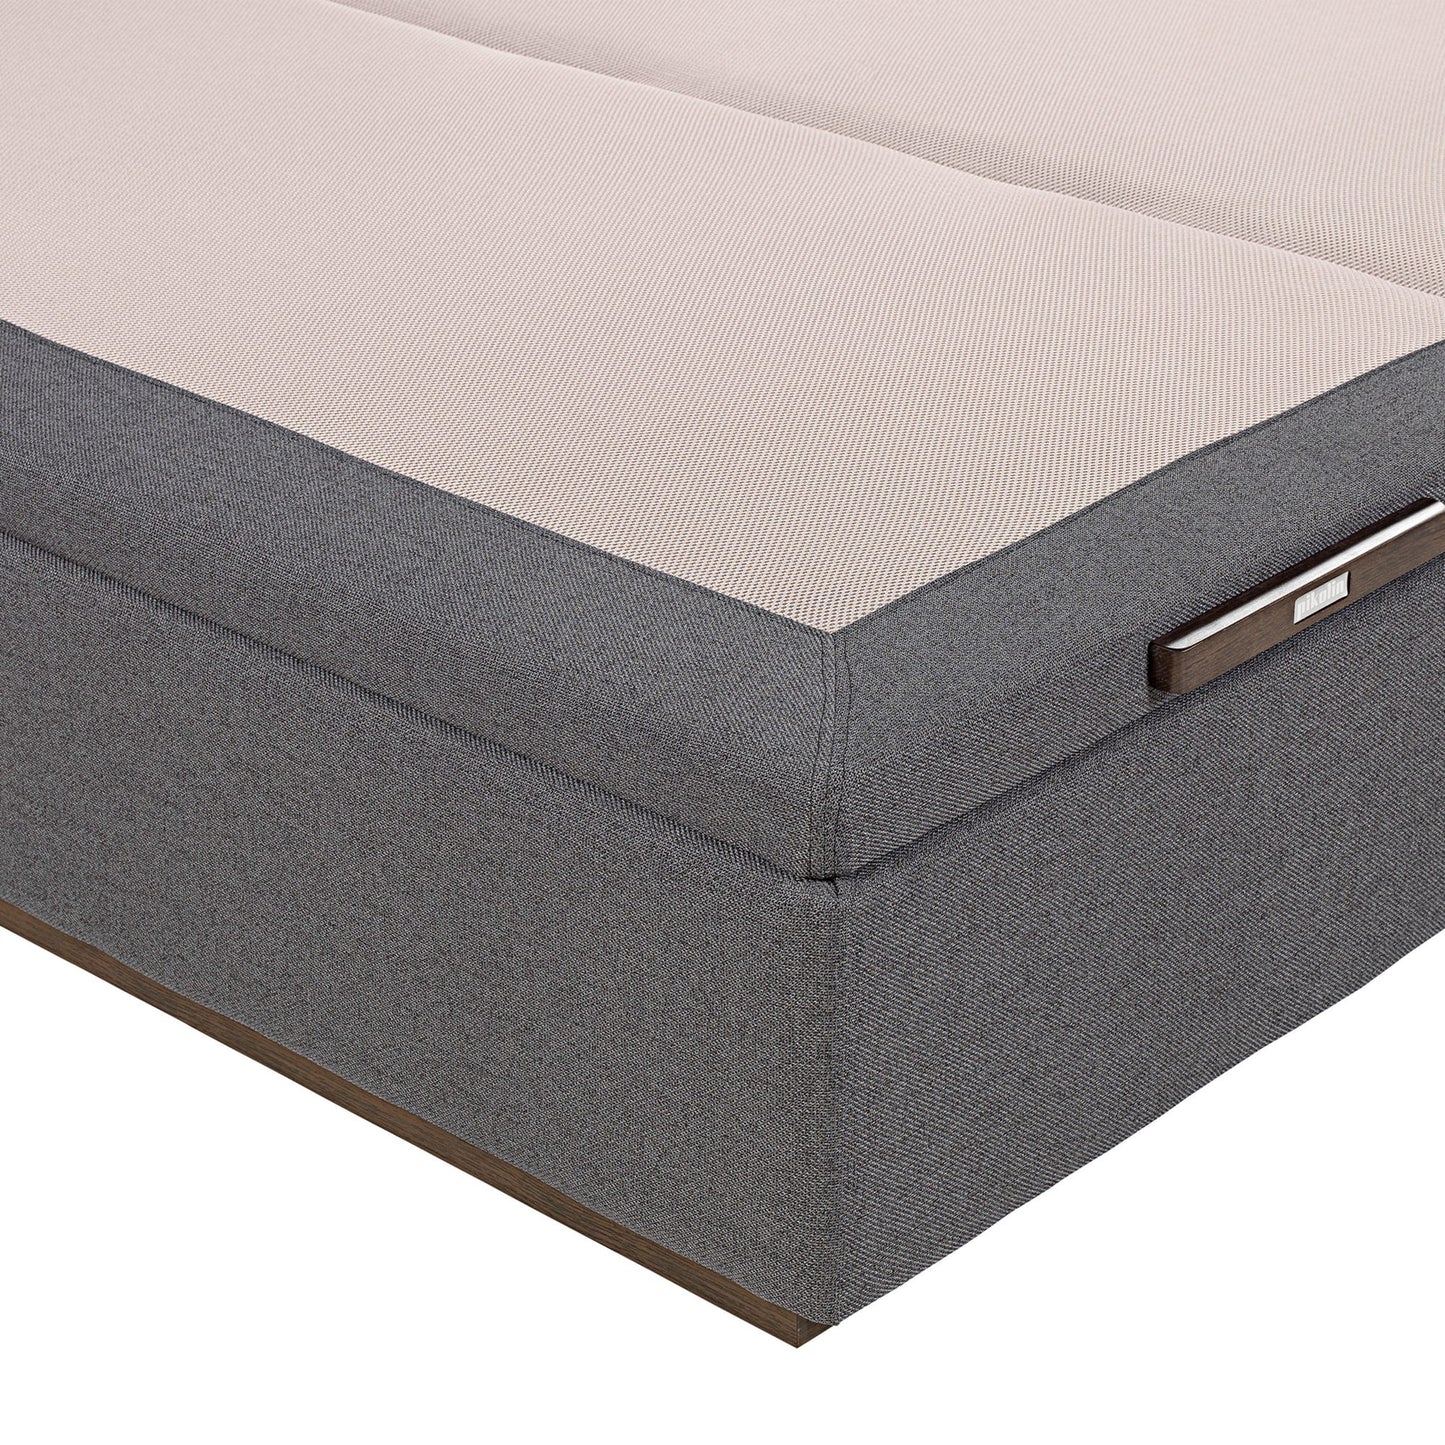 Canapé abatible de tapa doble de color piombo - TEXTIL - 150x200